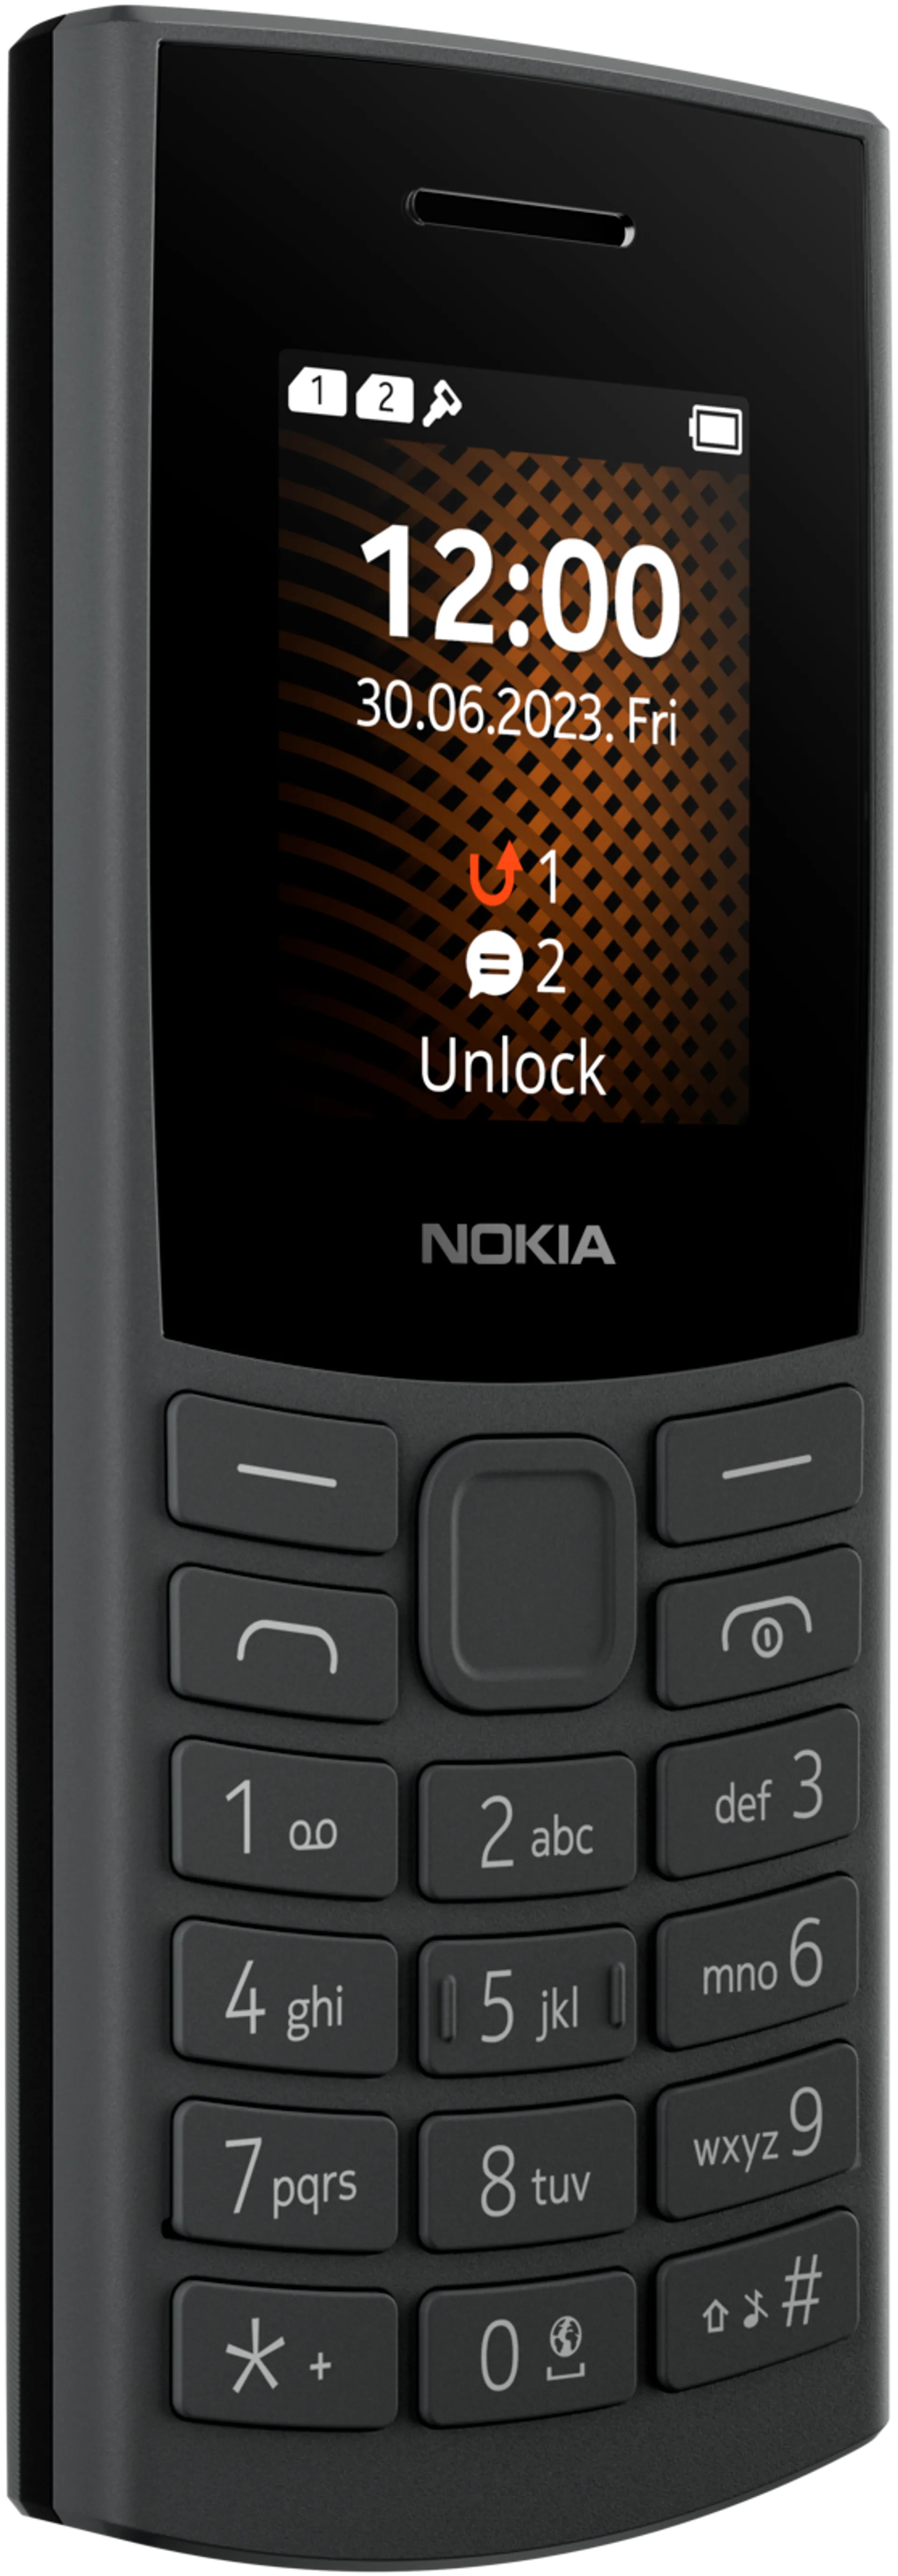 Nokia 105 4G peruspuhelin hiilenharmaa - 3